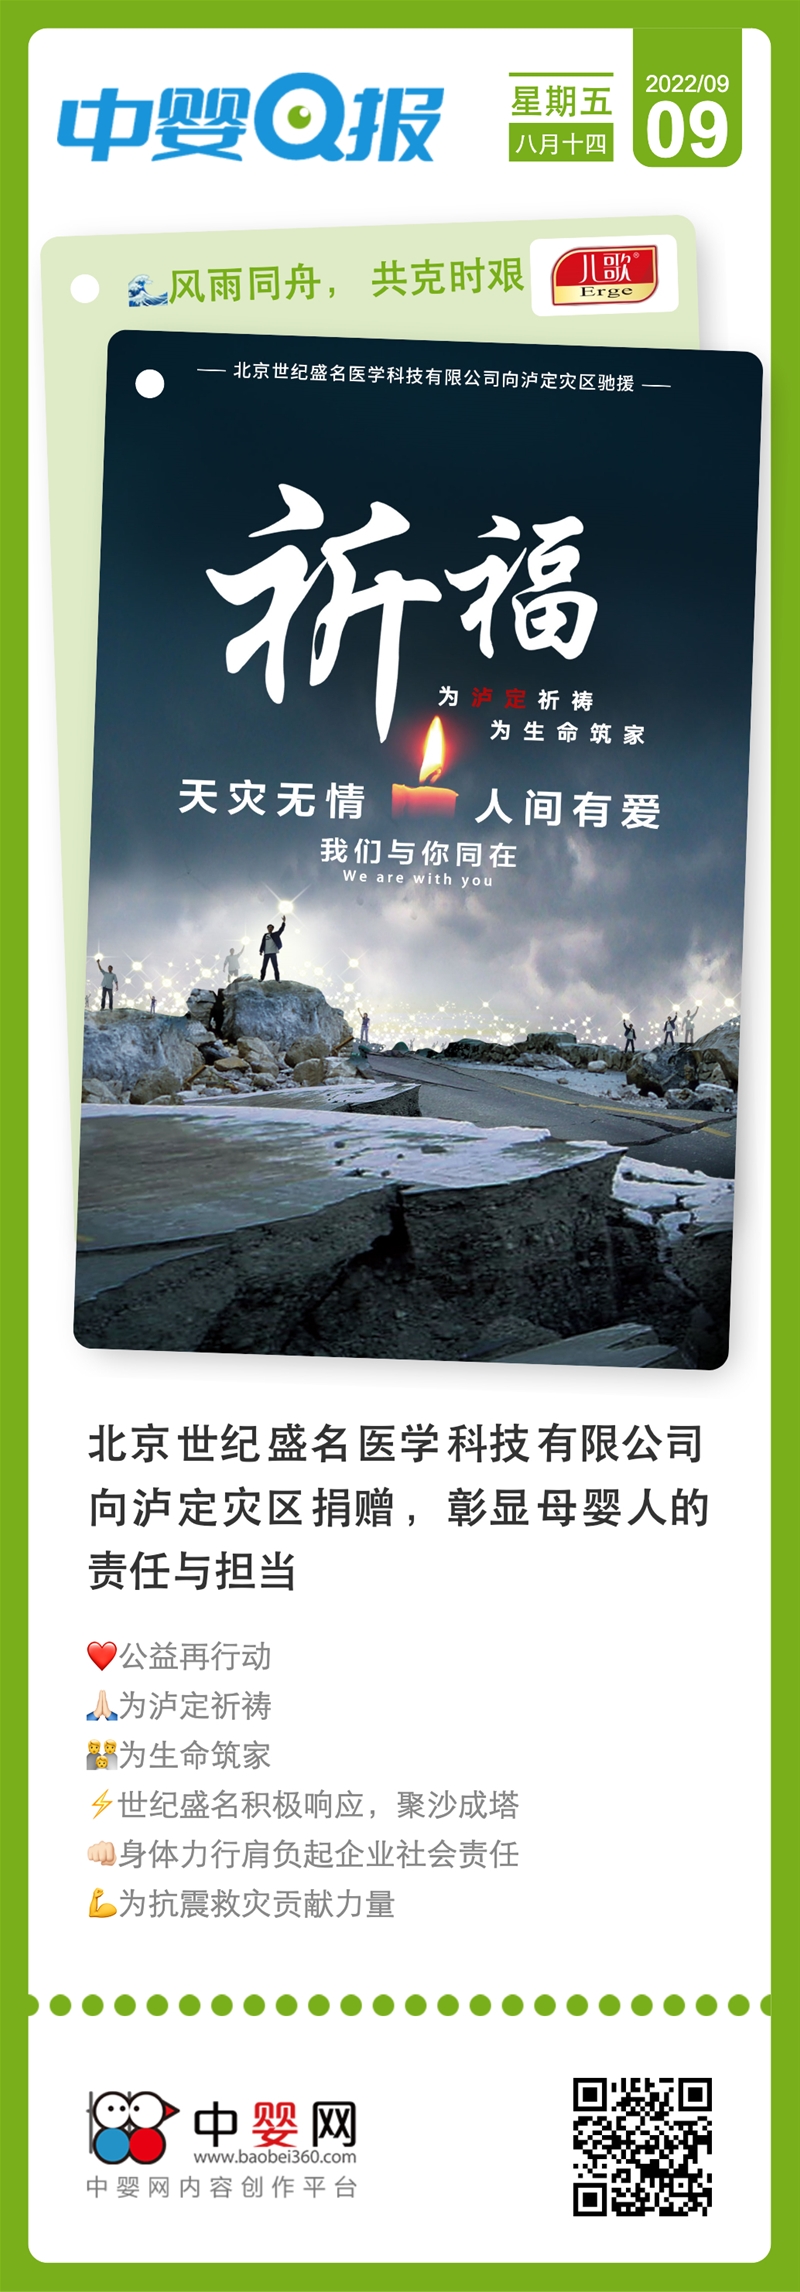 北京世纪盛名医学科技有限公司向泸定灾区捐赠